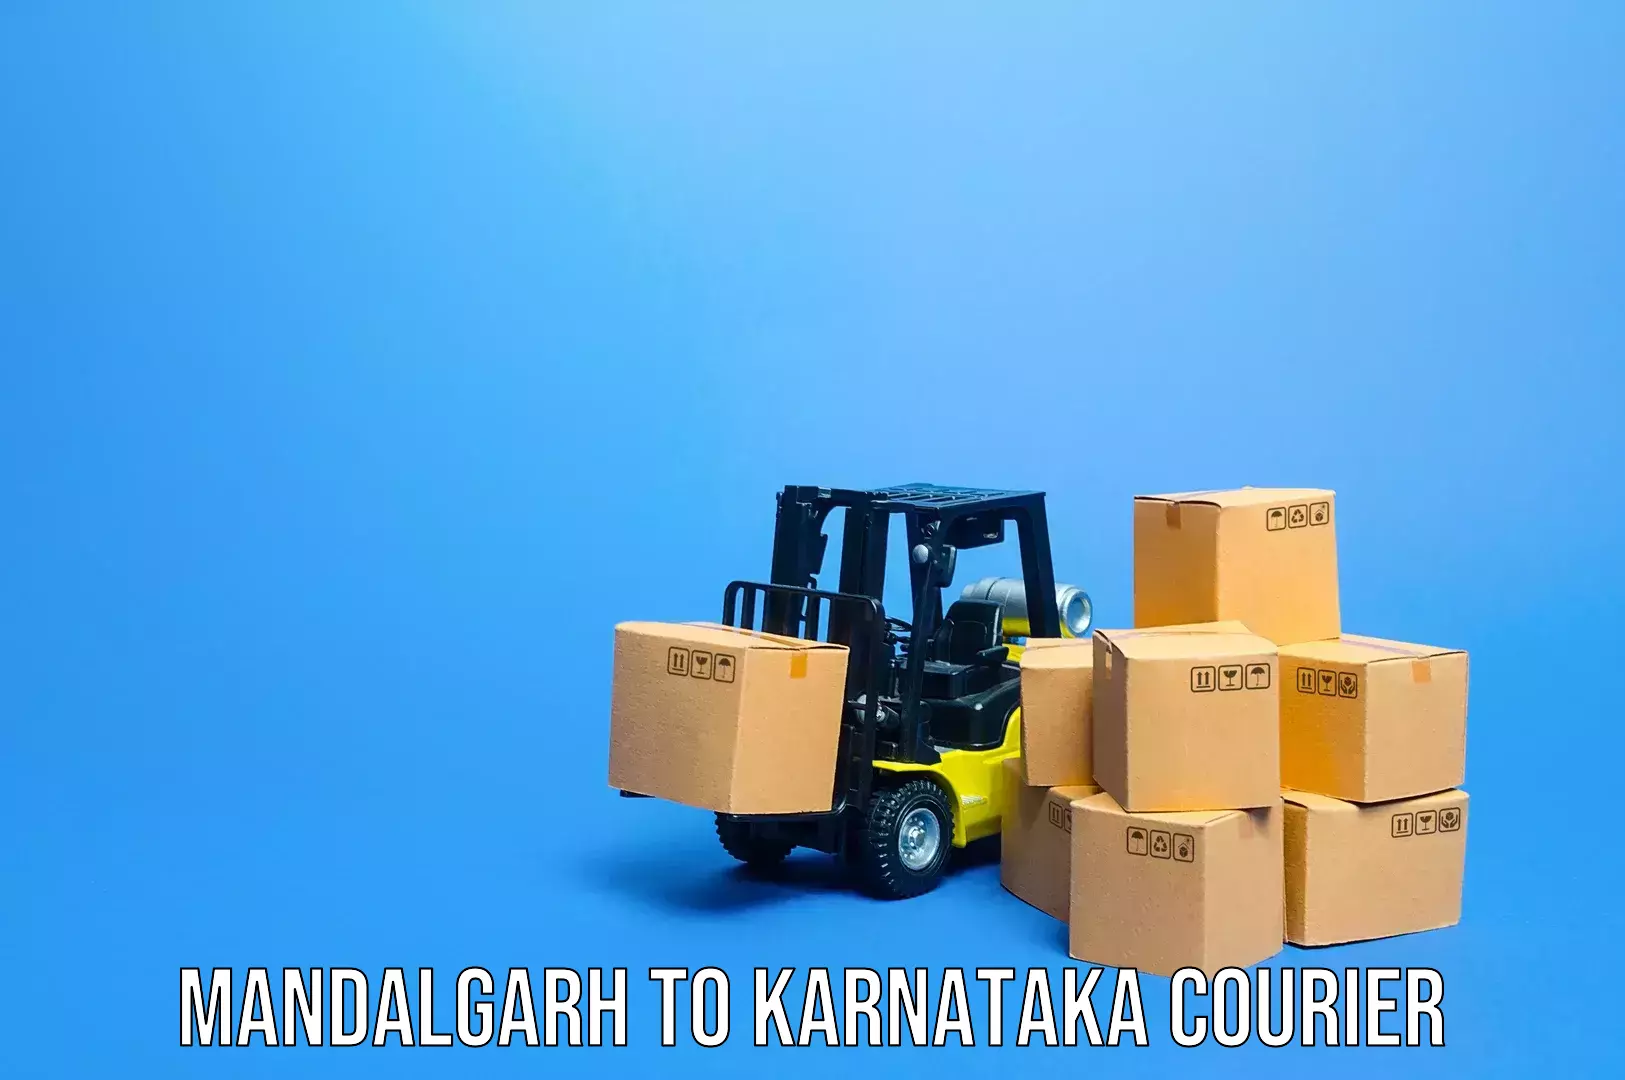 Baggage transport coordination Mandalgarh to Karnataka